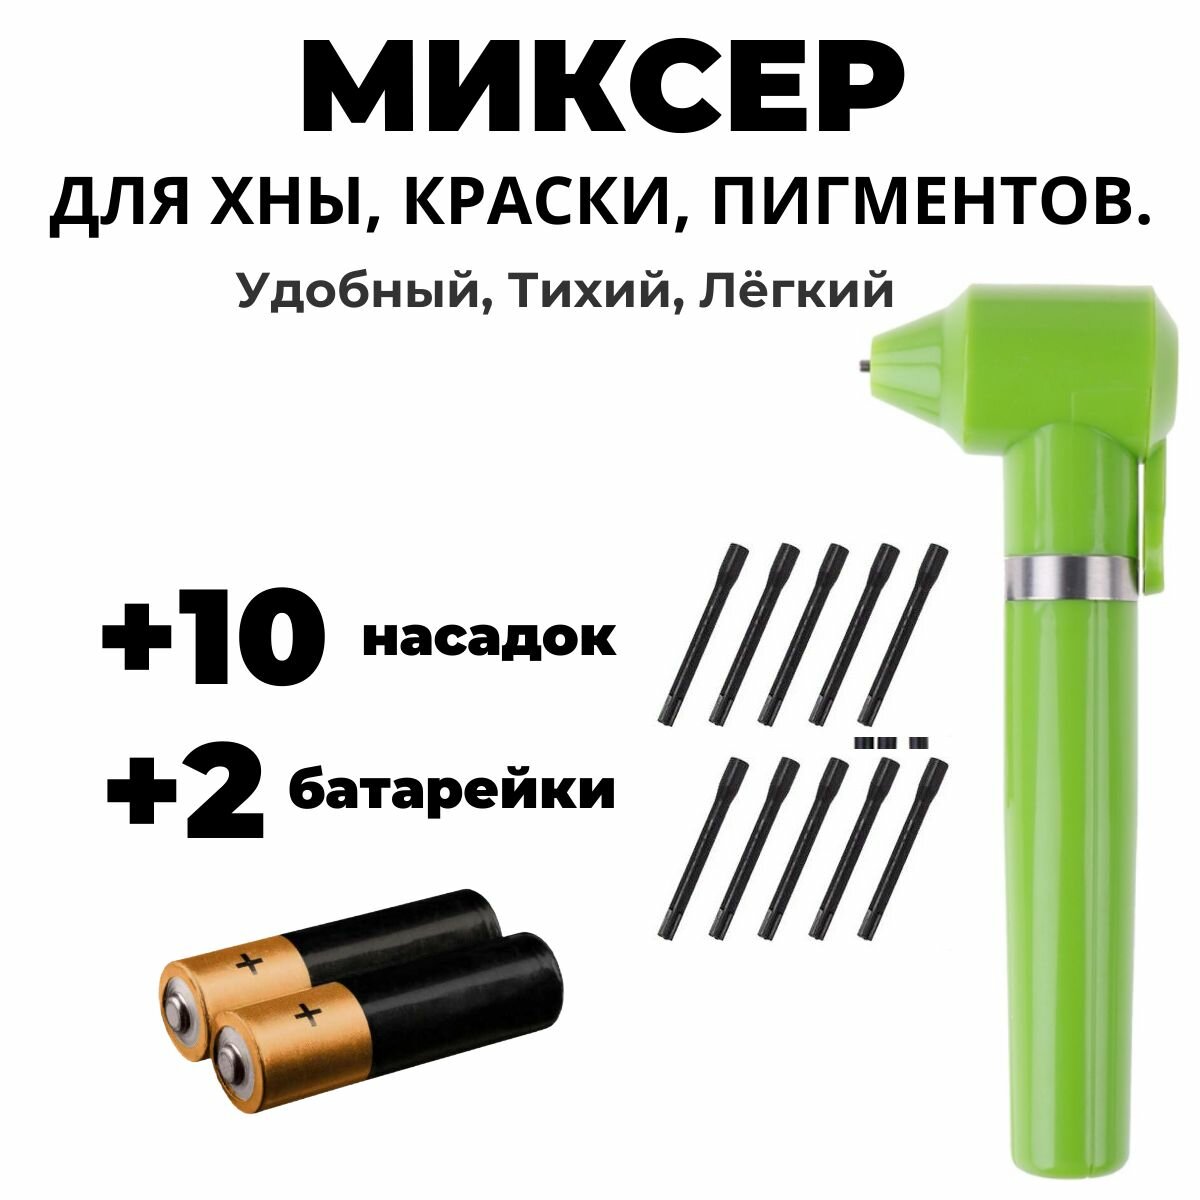 Миксер для смешивания пигментов (Хны, Красок). / Миксер косметический / Батарейки В комплекте, + 10 насадок (зеленый)